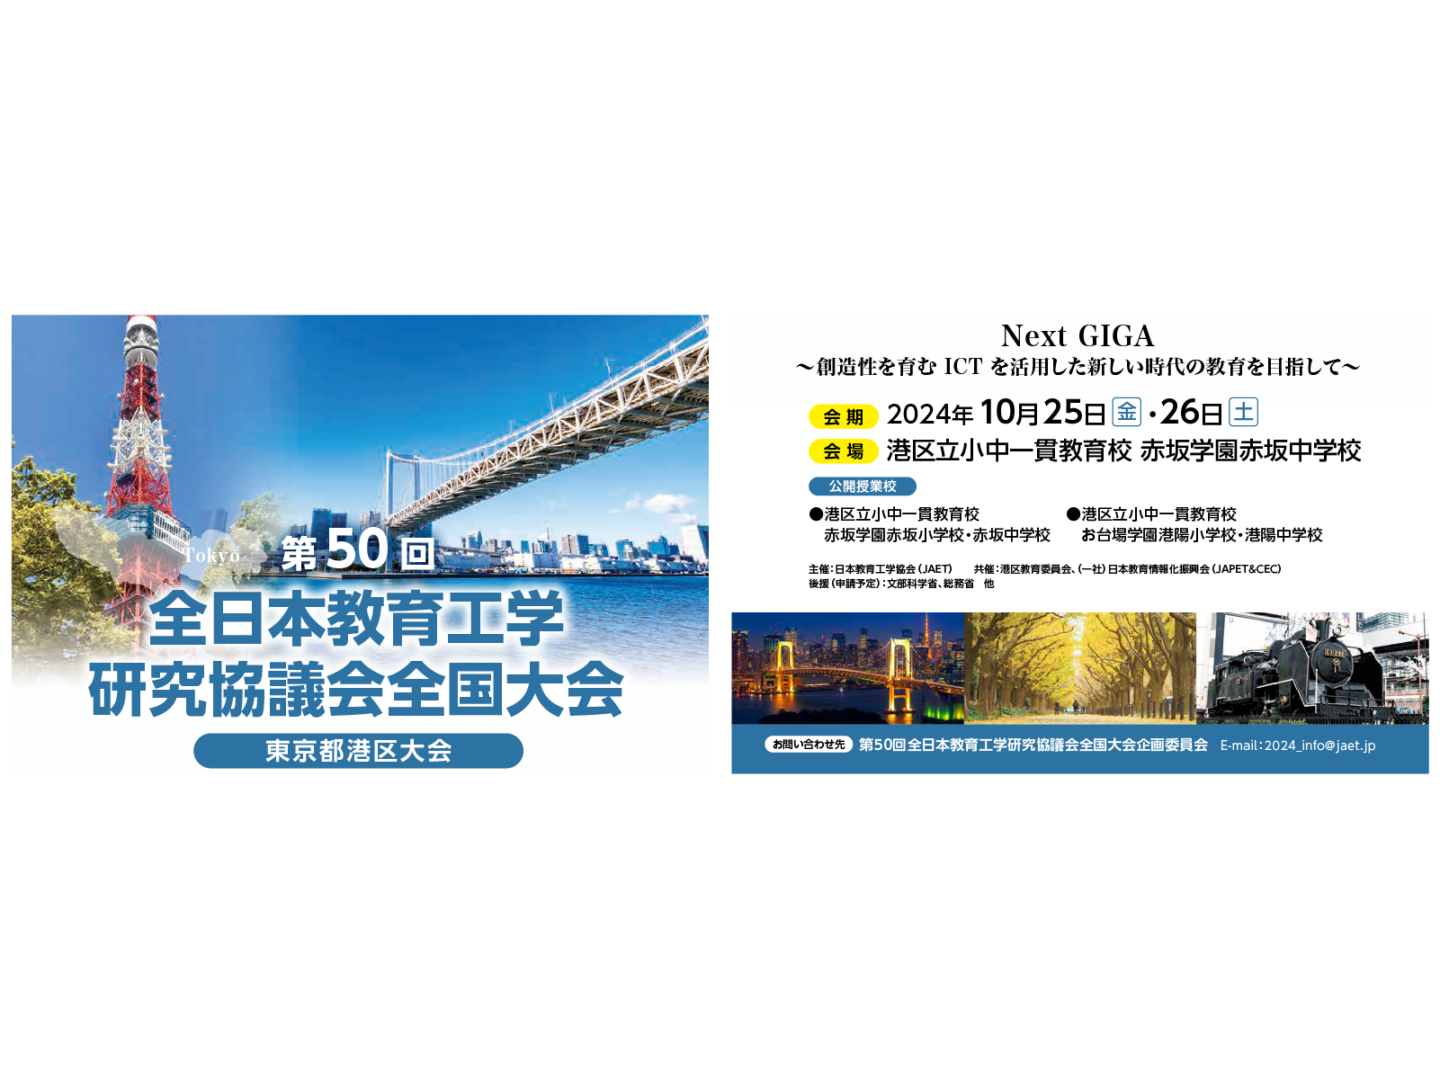 2024年度は第50回記念大会として、東京都港区で開催いたします。